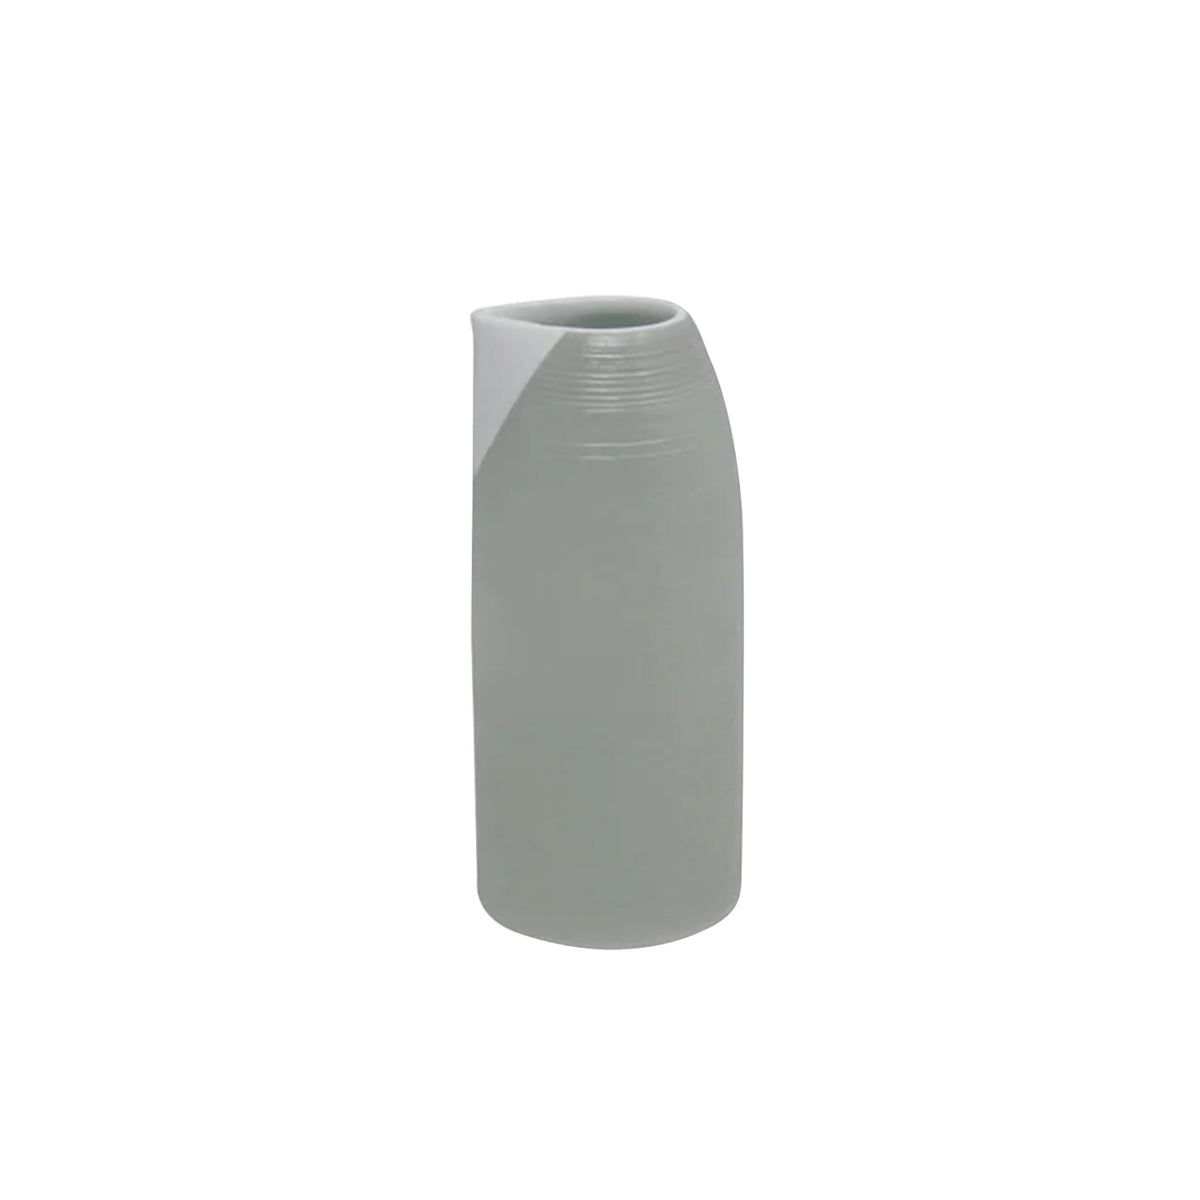 HEMISPHERE Grey - Sake jug, large